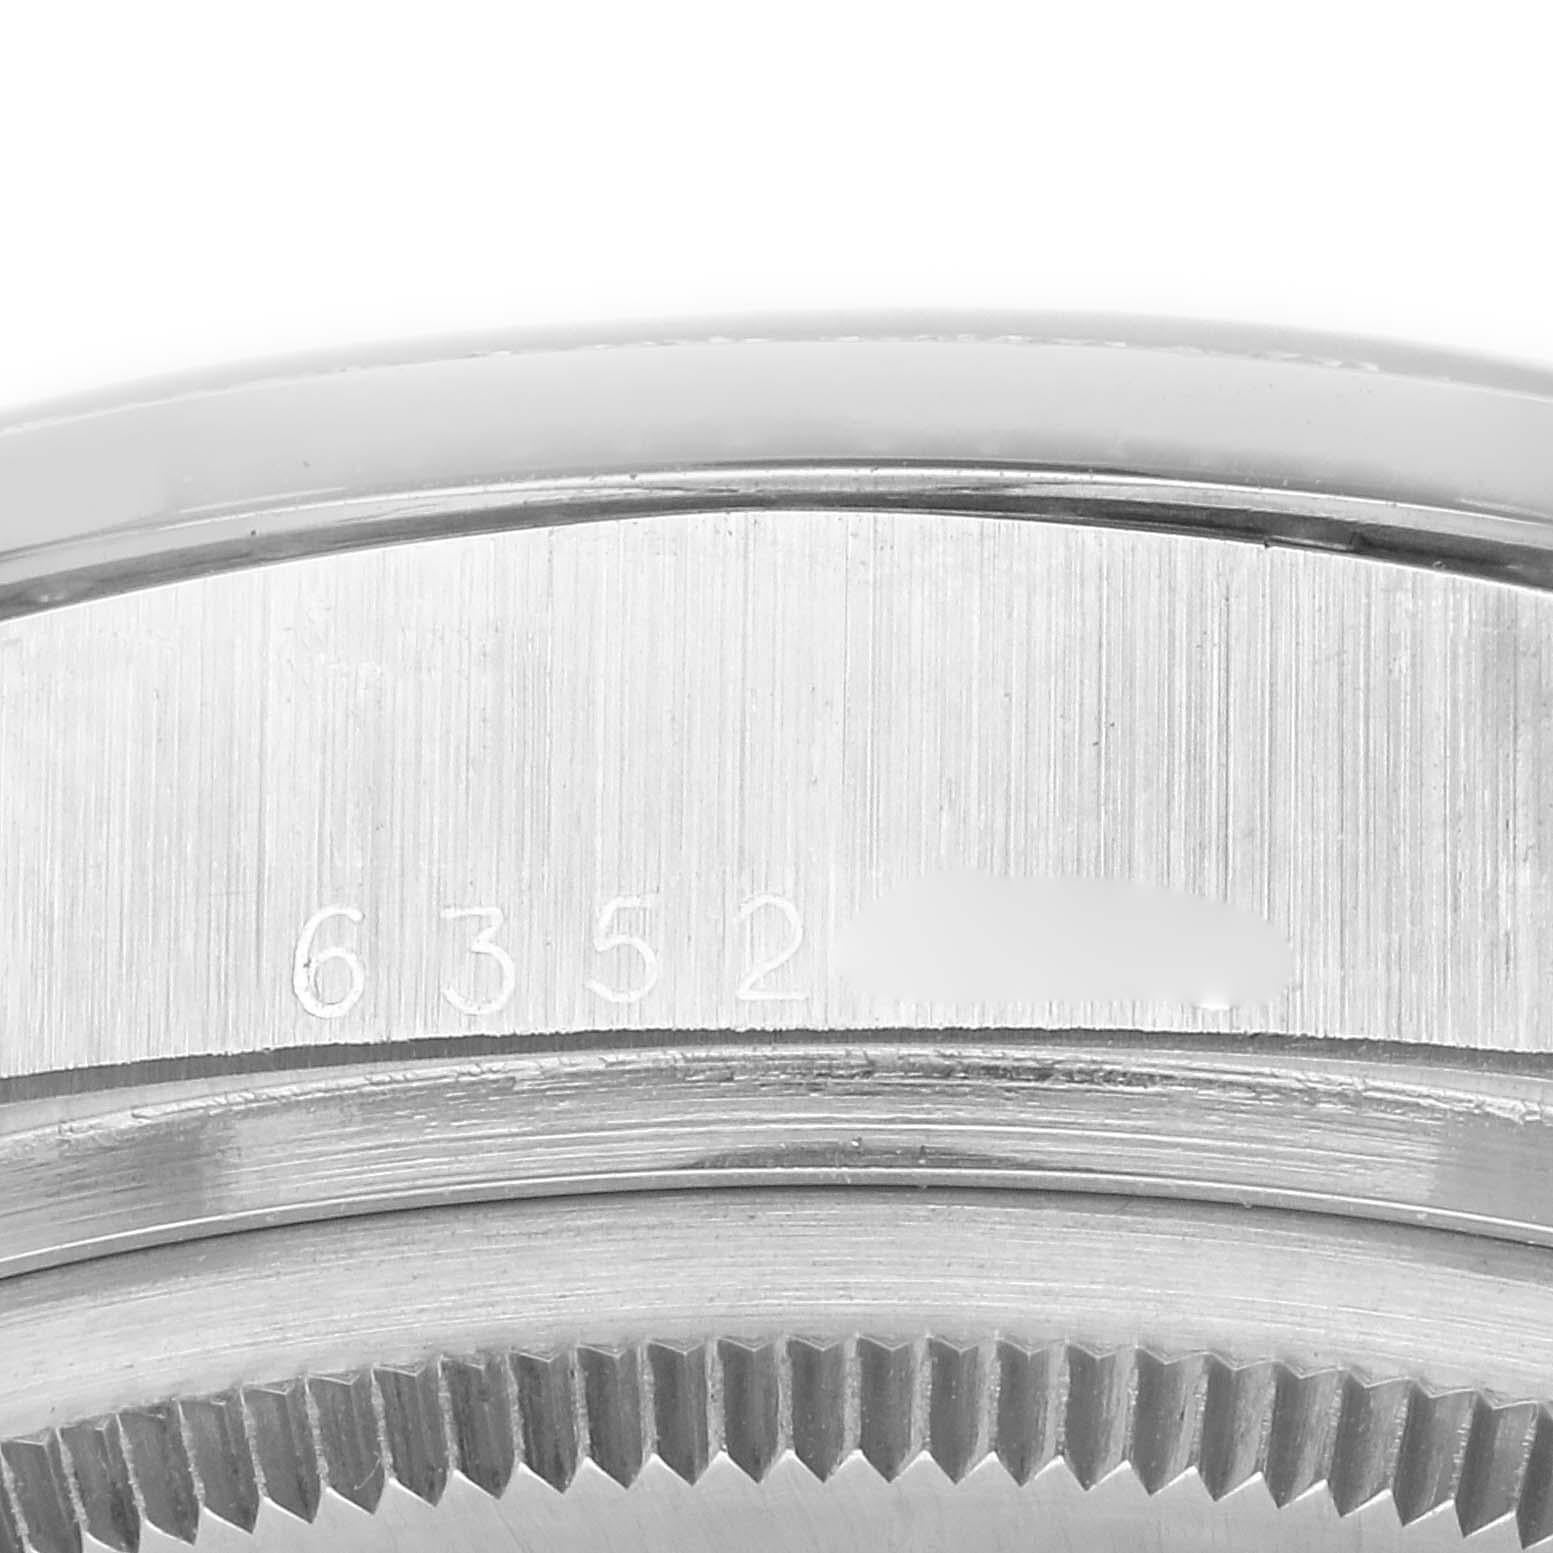 Rolex Präsident Day-Date Silber Zifferblatt Platin Diamant Herrenuhr 18046. Offiziell zertifiziertes Chronometerwerk mit automatischem Aufzug und Datumsschnellverstellung. Platin-Oyster-Gehäuse mit einem Durchmesser von 36,0 mm. Rolex Logo auf einer